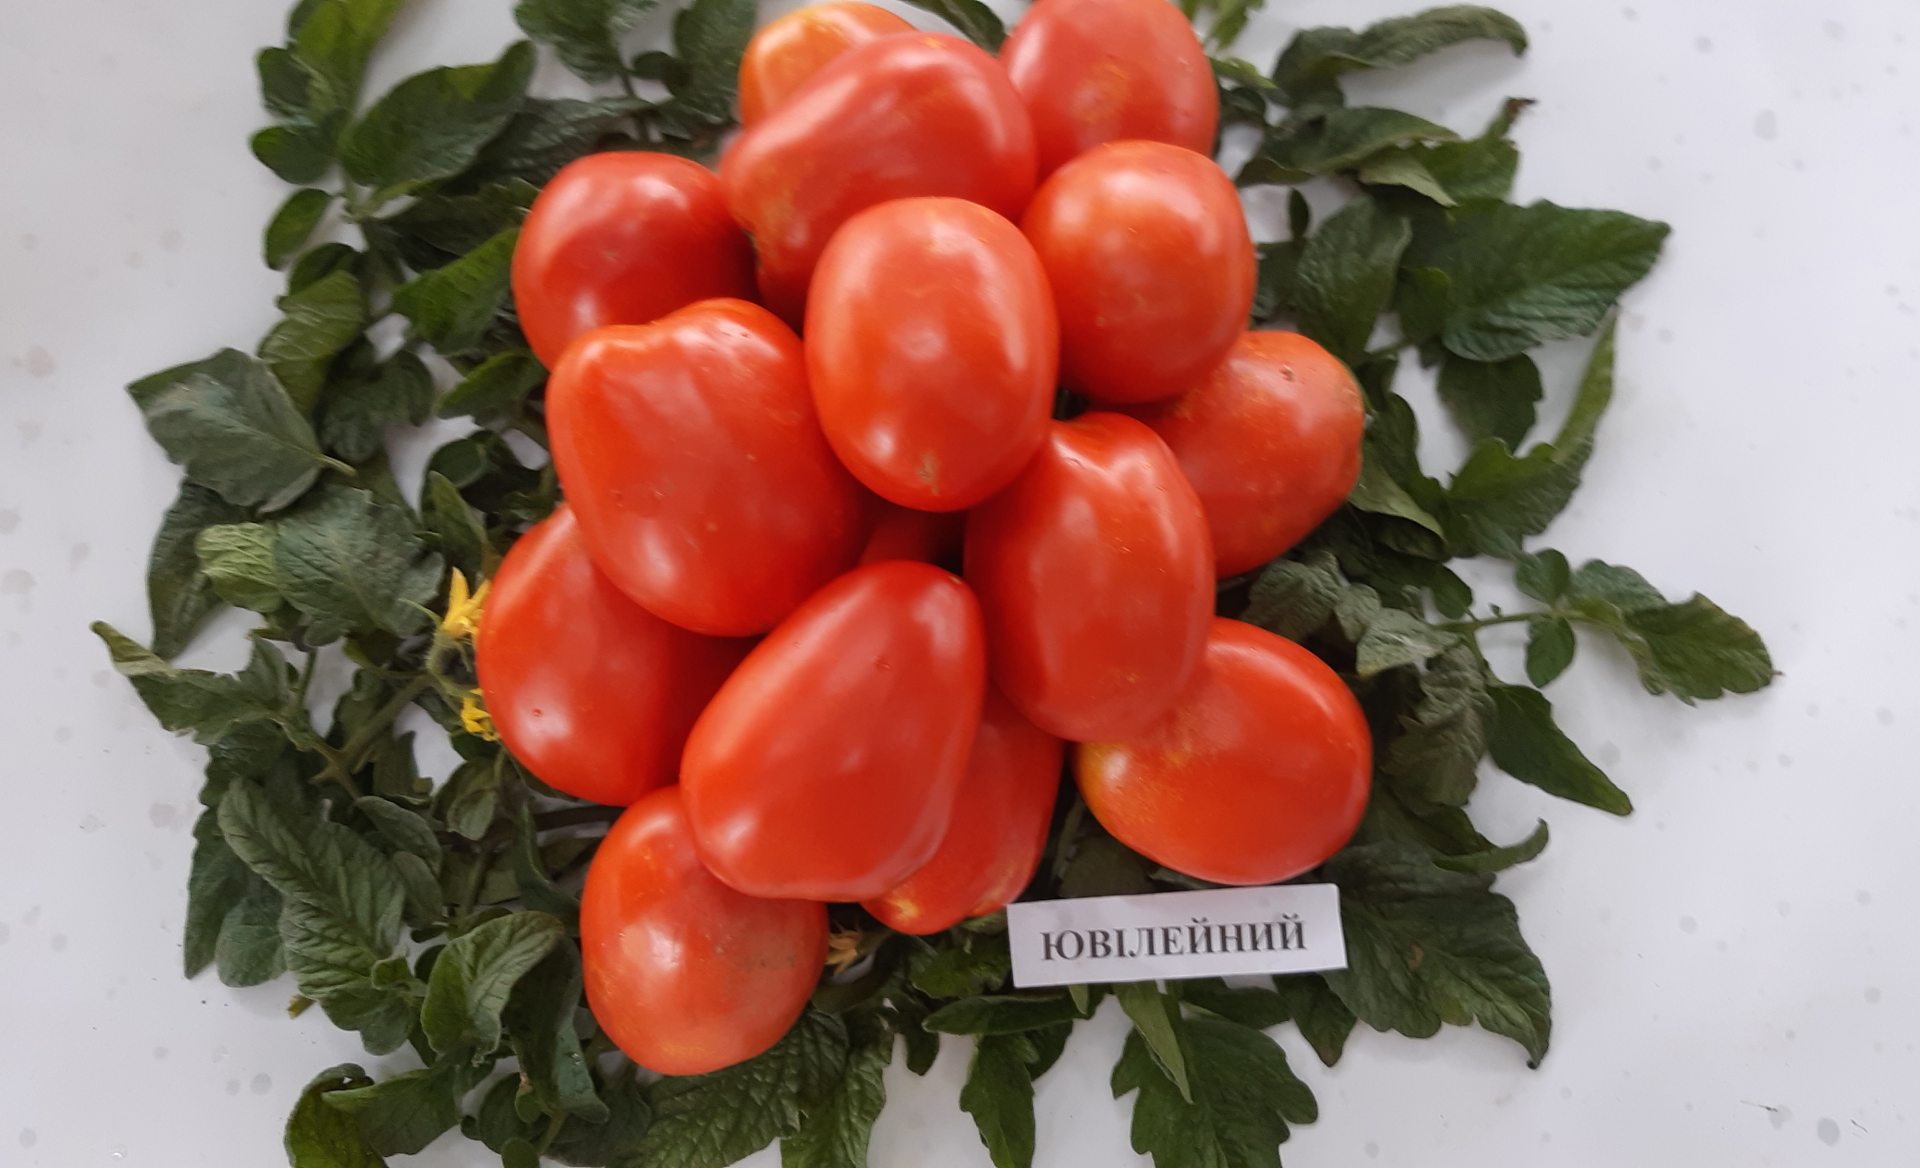 Сорт великанских помидоров вывели херсонские селекционеры